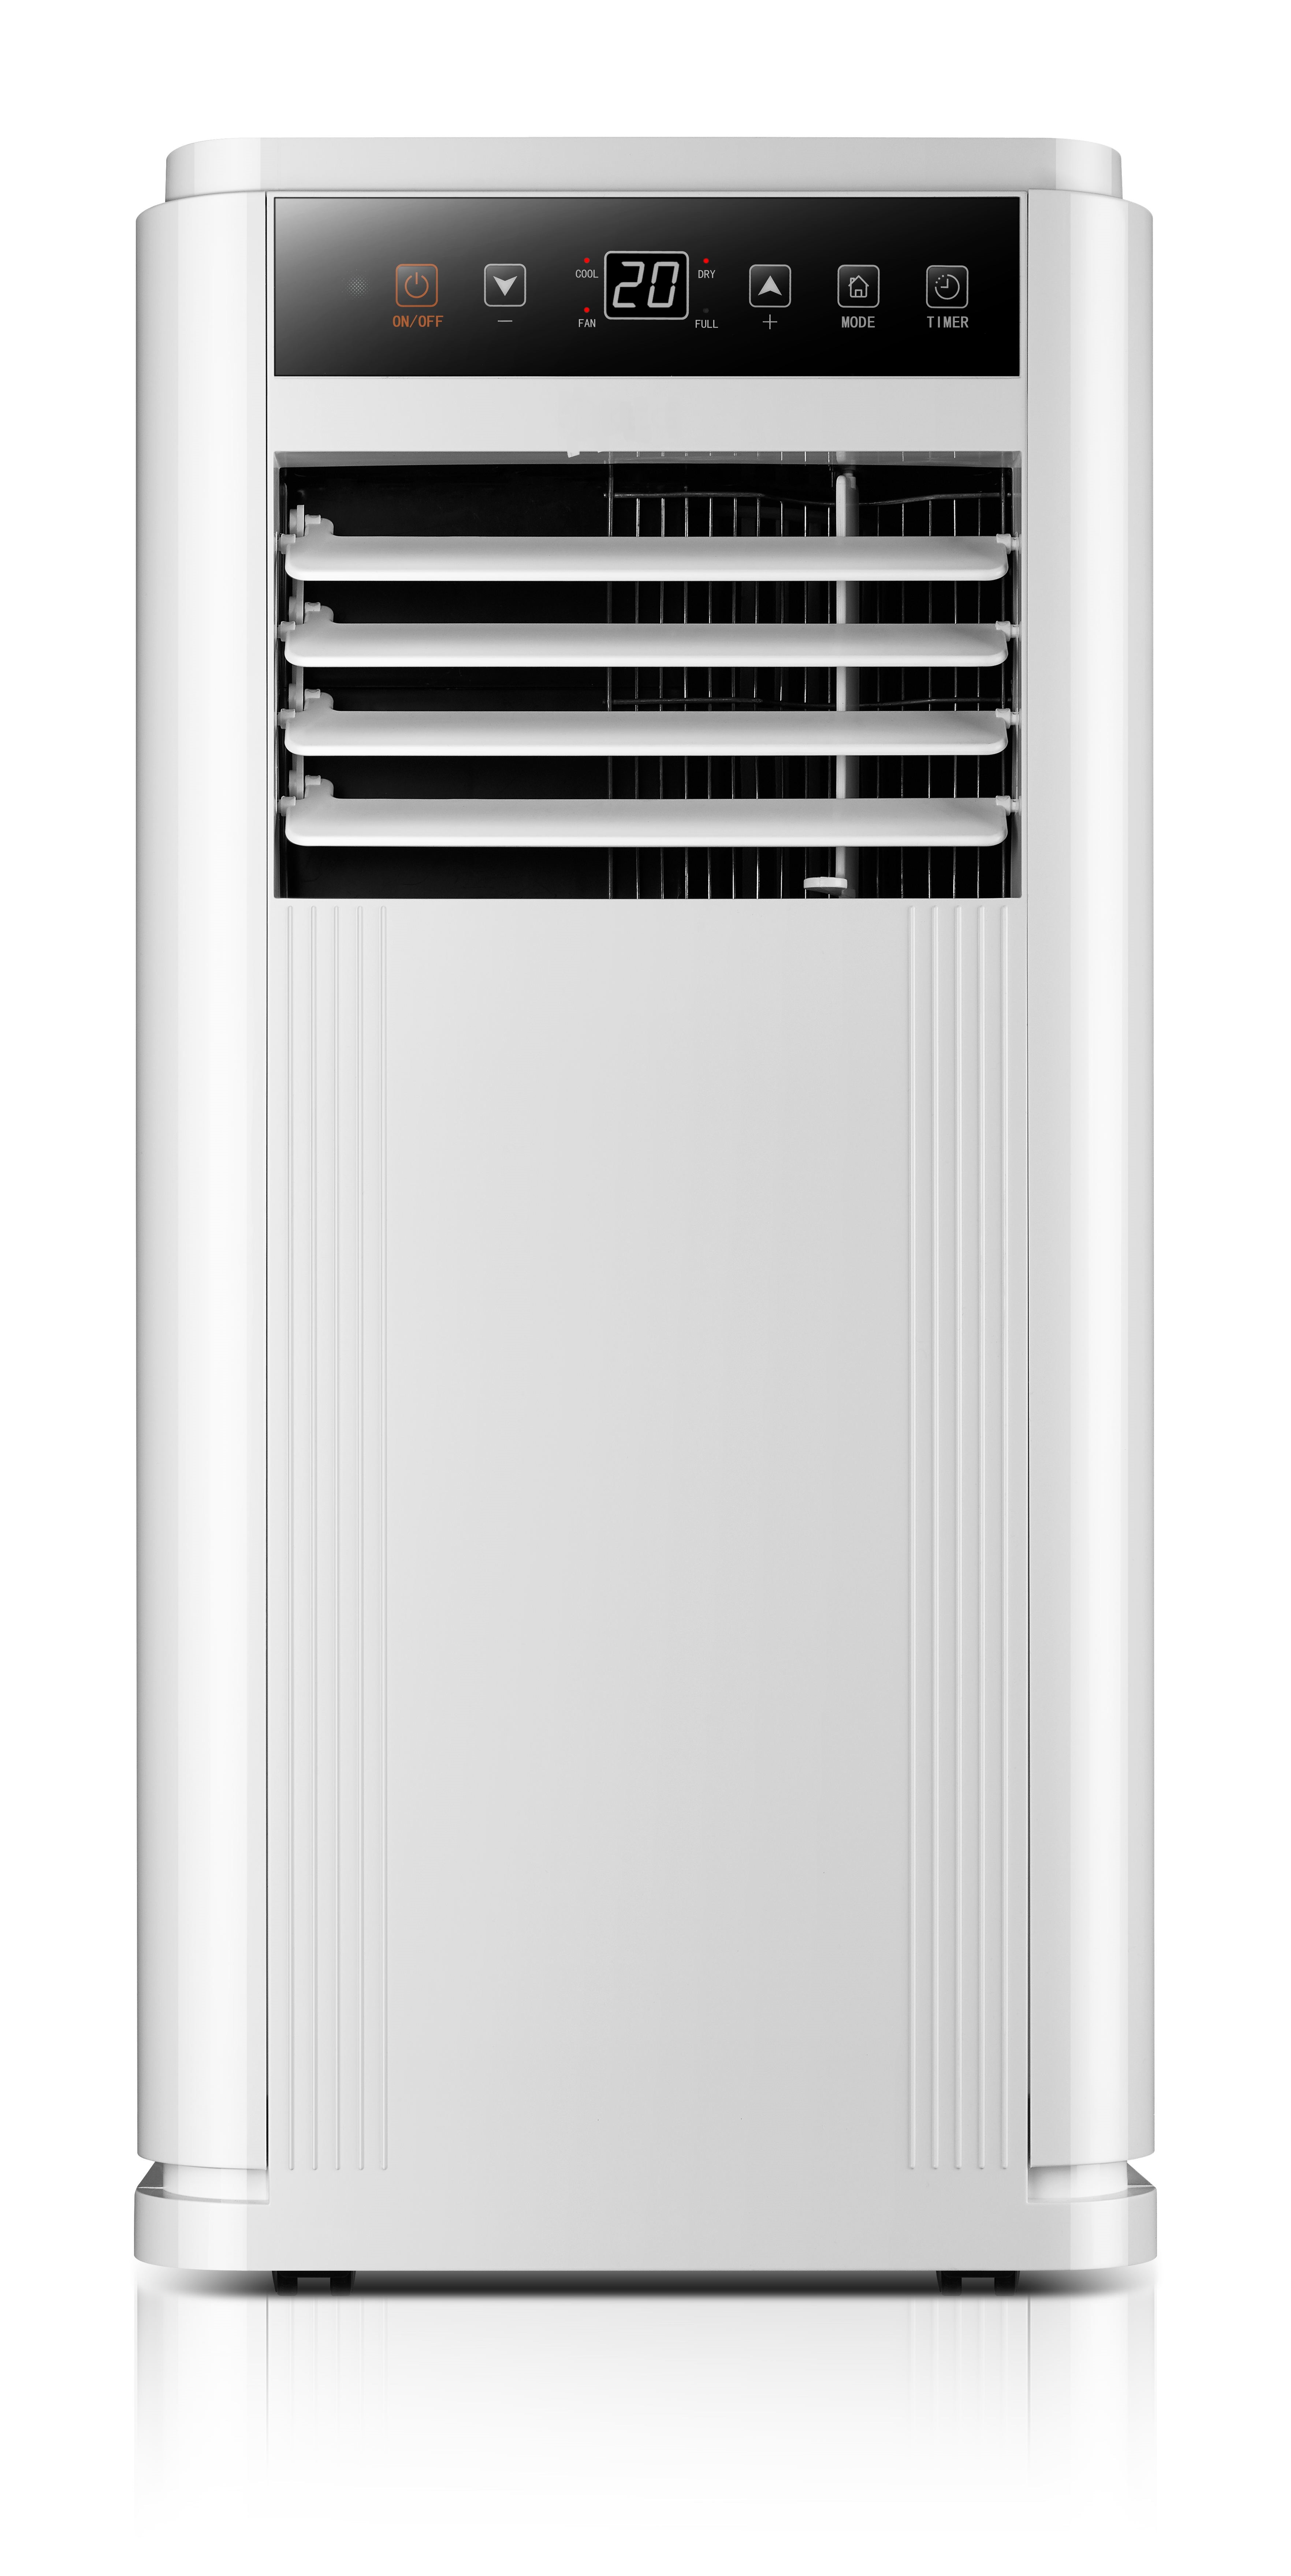 Konka portable air conditioner